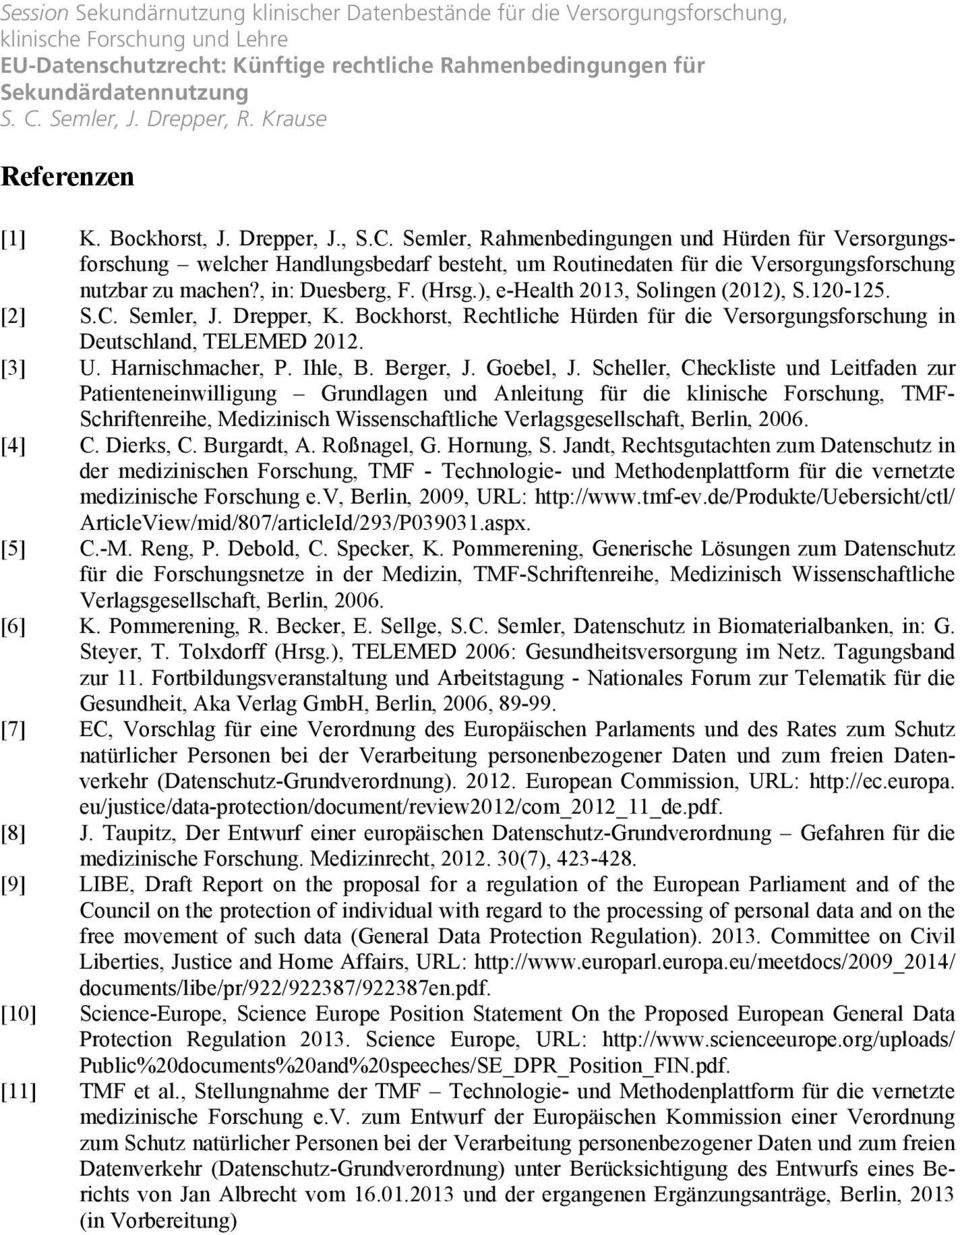 ), e-health 2013, Solingen (2012), S.120-125. [2] S.C. Semler, J. Drepper, K. Bockhorst, Rechtliche Hürden für die Versorgungsforschung in Deutschland, TELEMED 2012. [3] U. Harnischmacher, P. Ihle, B.